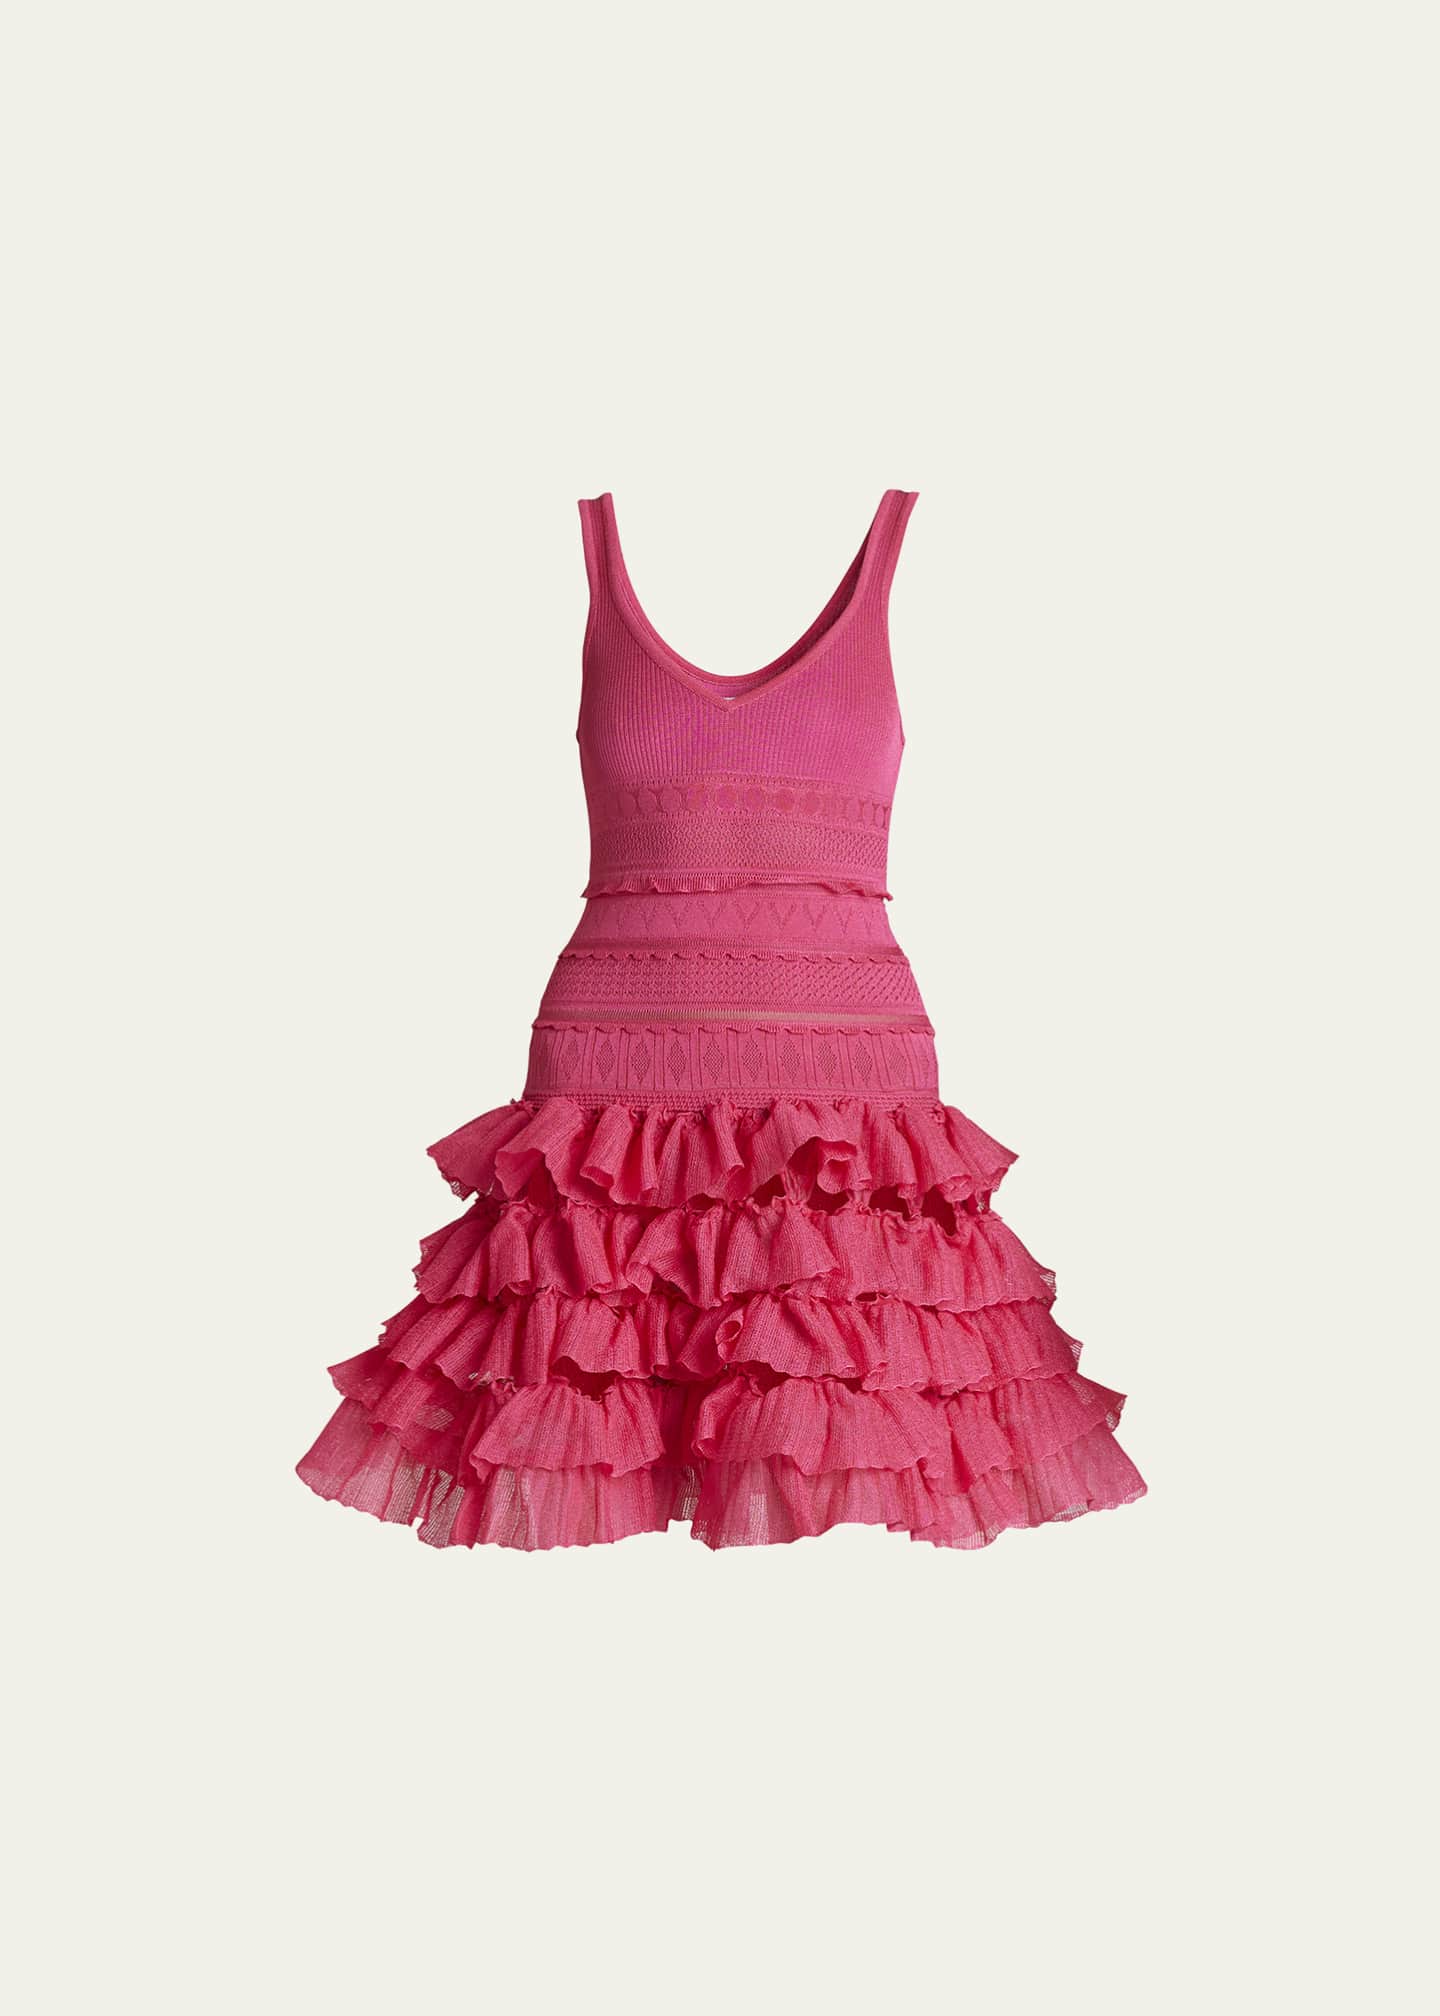 ALAIA Textured Knit Ruffle Mini Dress - Bergdorf Goodman